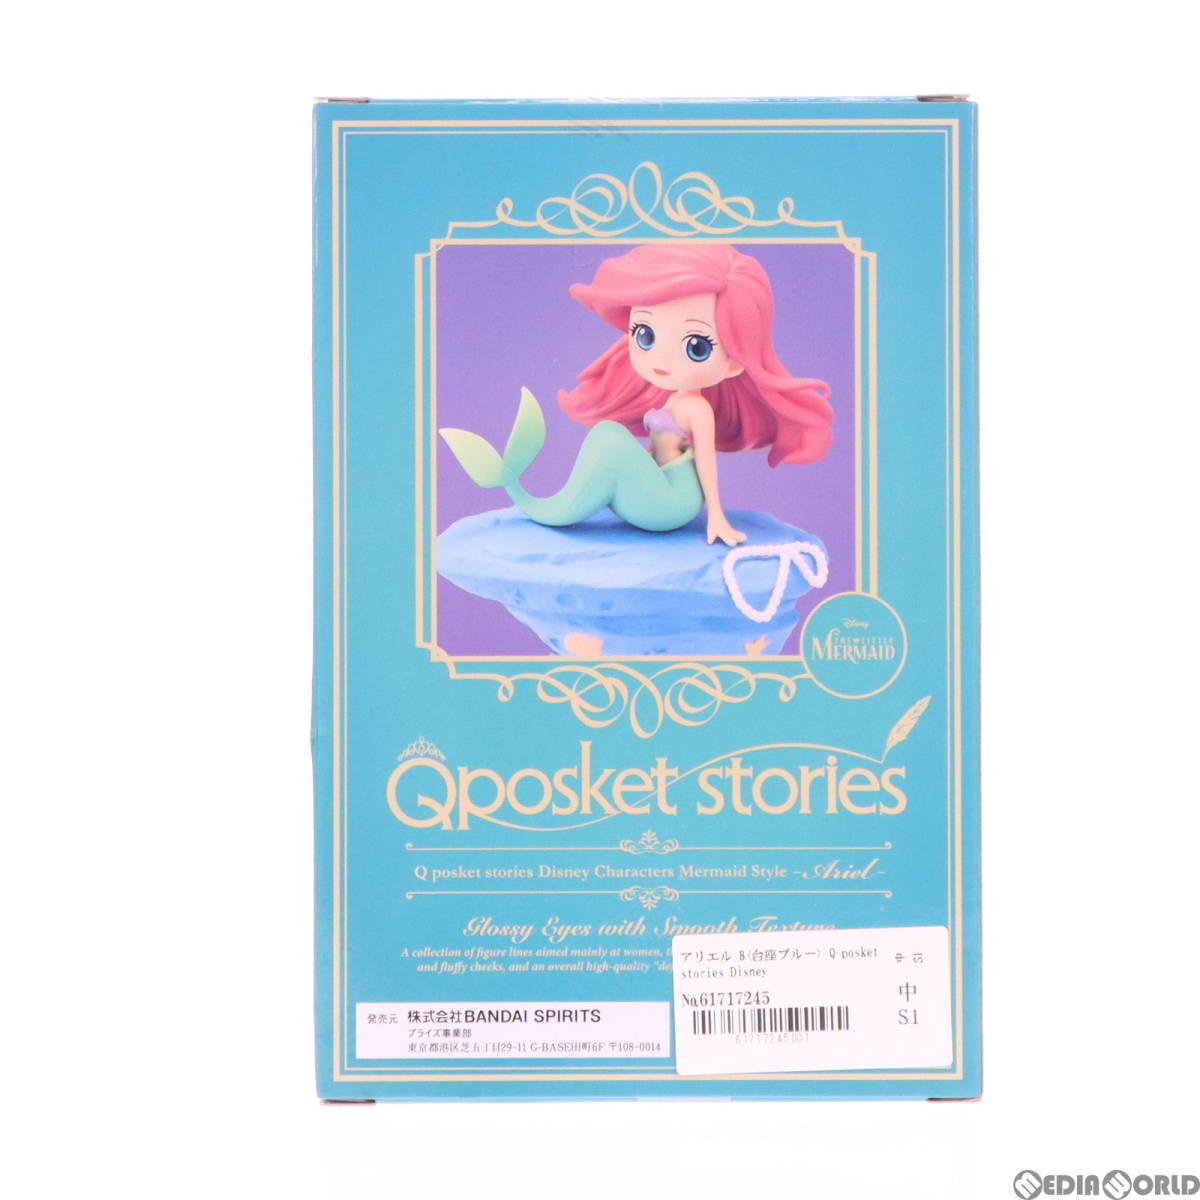 【中古】[FIG]アリエル B(台座ブルー) Q posket stories Disney Characters Mermaid Style -Ariel- リトル・マーメイド フィギュア プライ_画像3